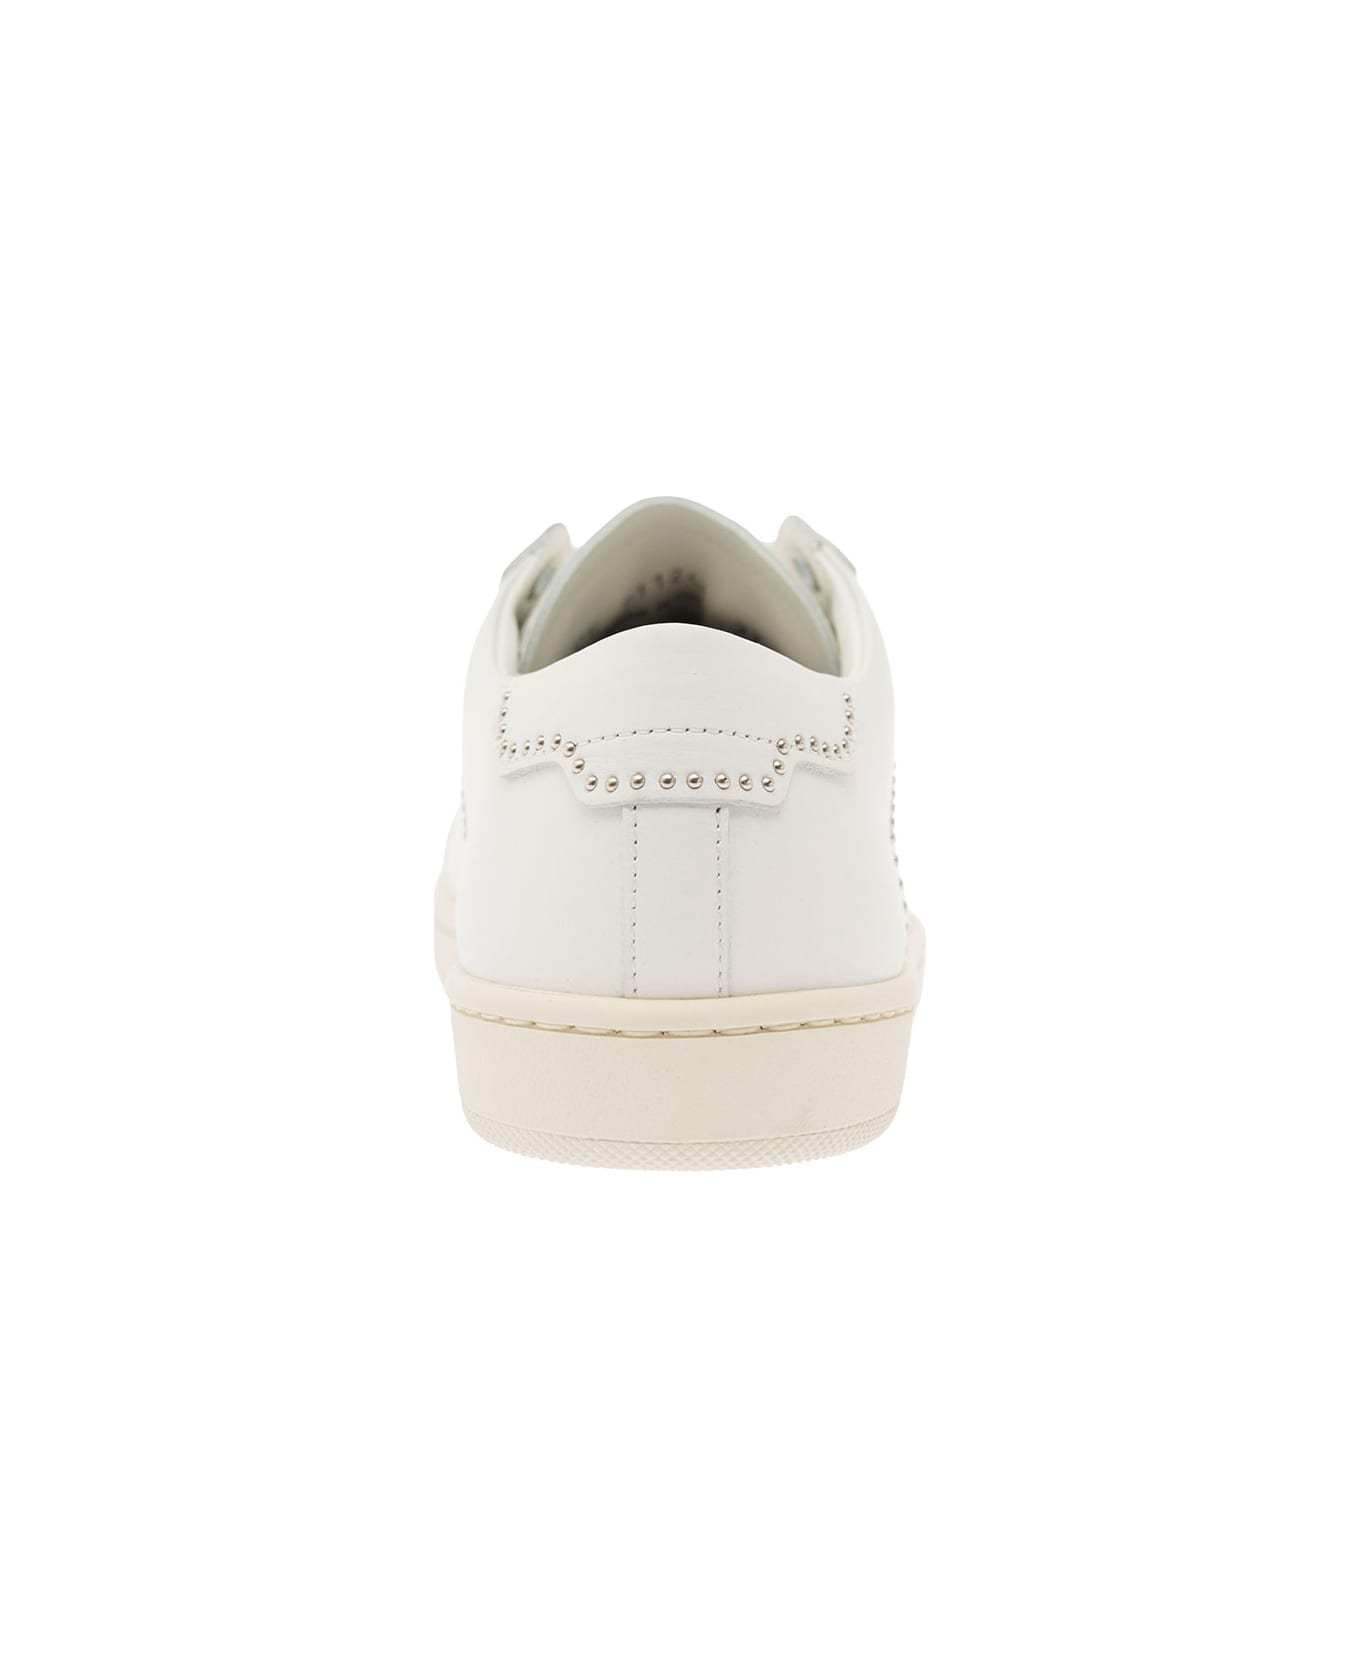 Saint Laurent White Sneakers - White スニーカー